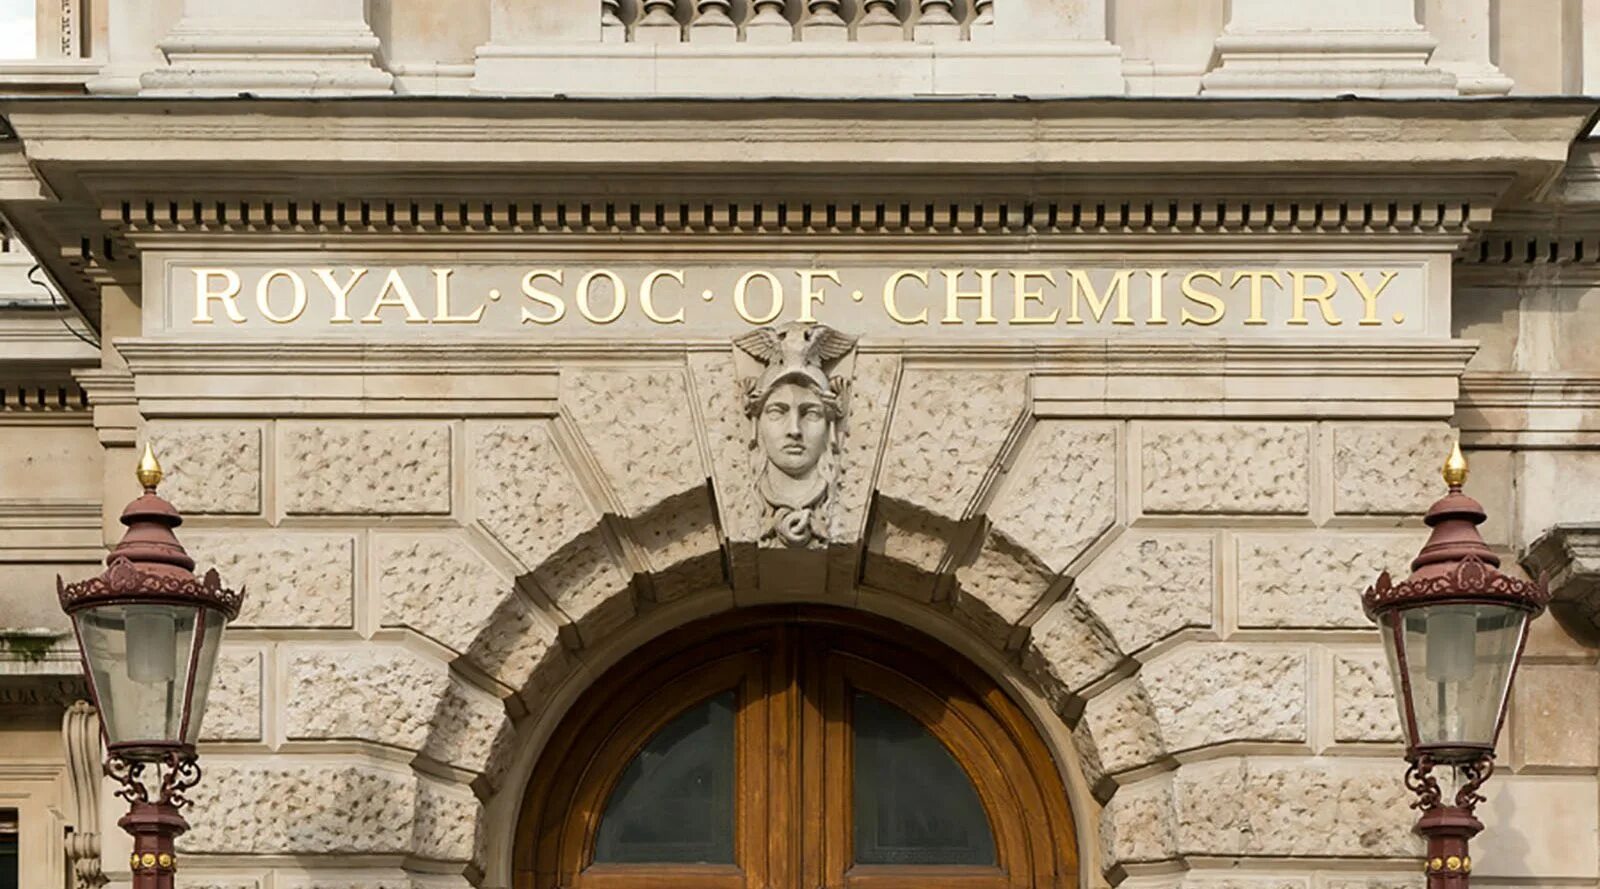 Royal society. Королевское общество искусств. Здание королевского общества искусств в Лондоне. Royal Society of Arts. Royal sociaty JF chemesrty.